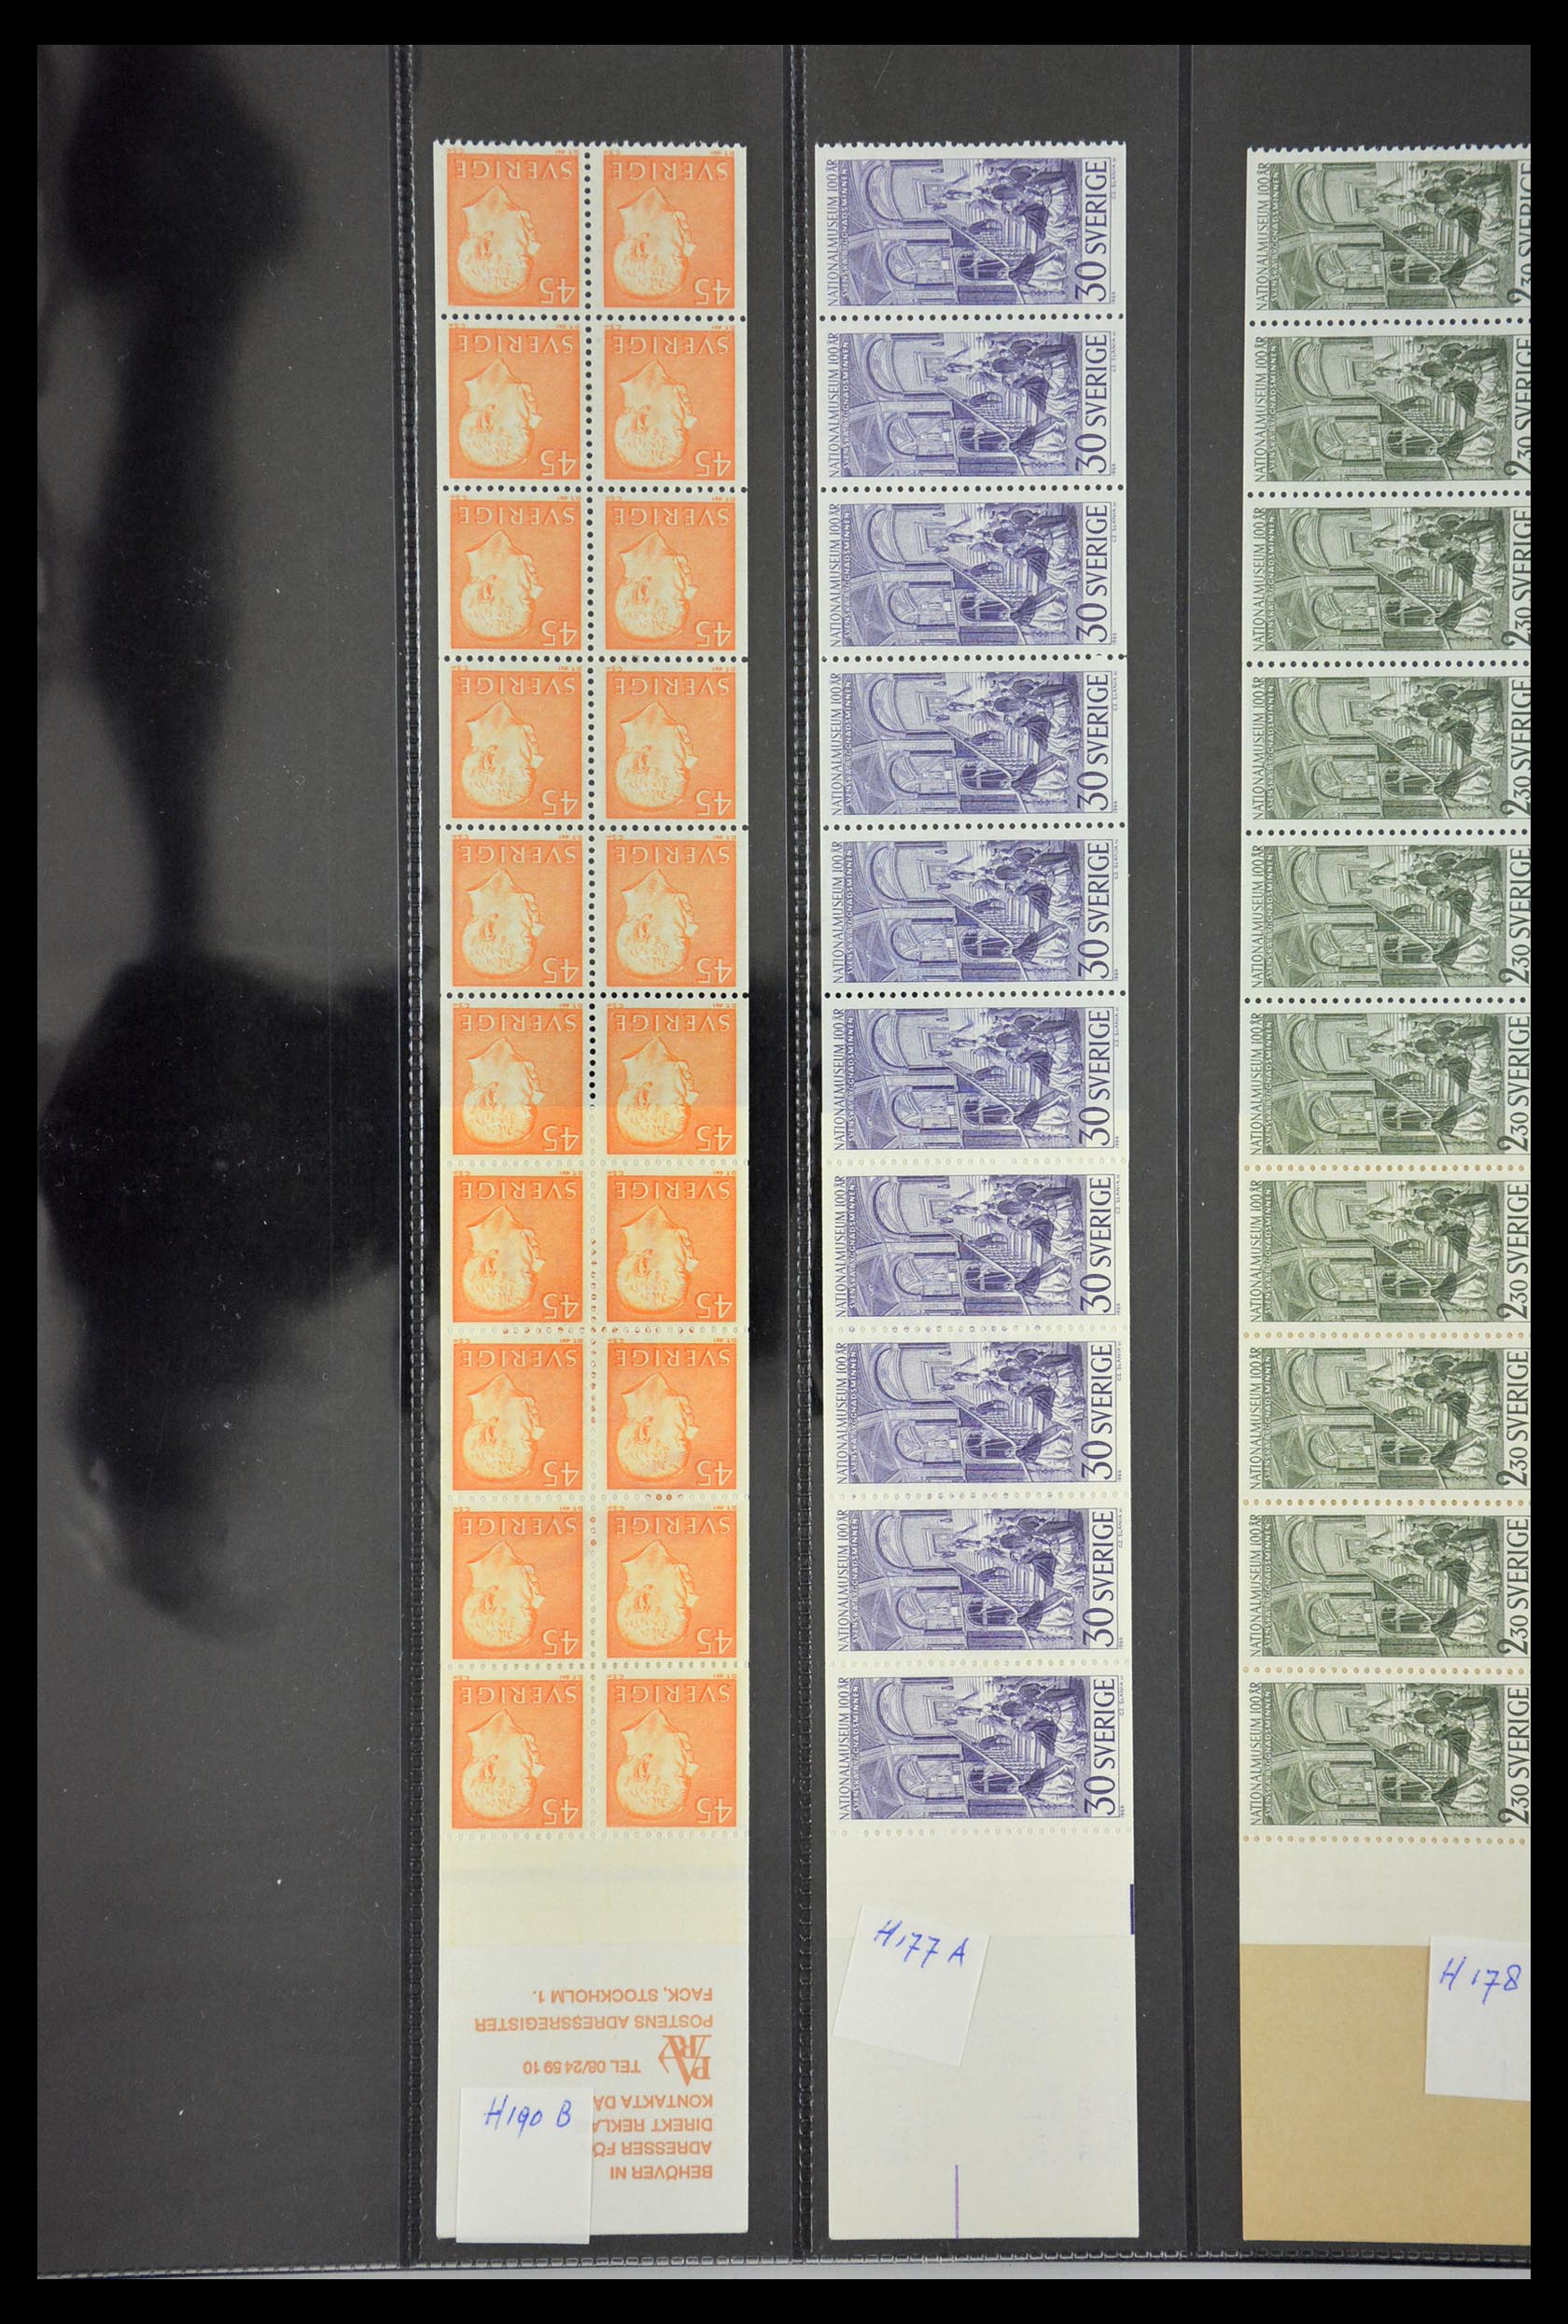 29368 037 - 29368 Sweden stamp booklets 1942-1996.